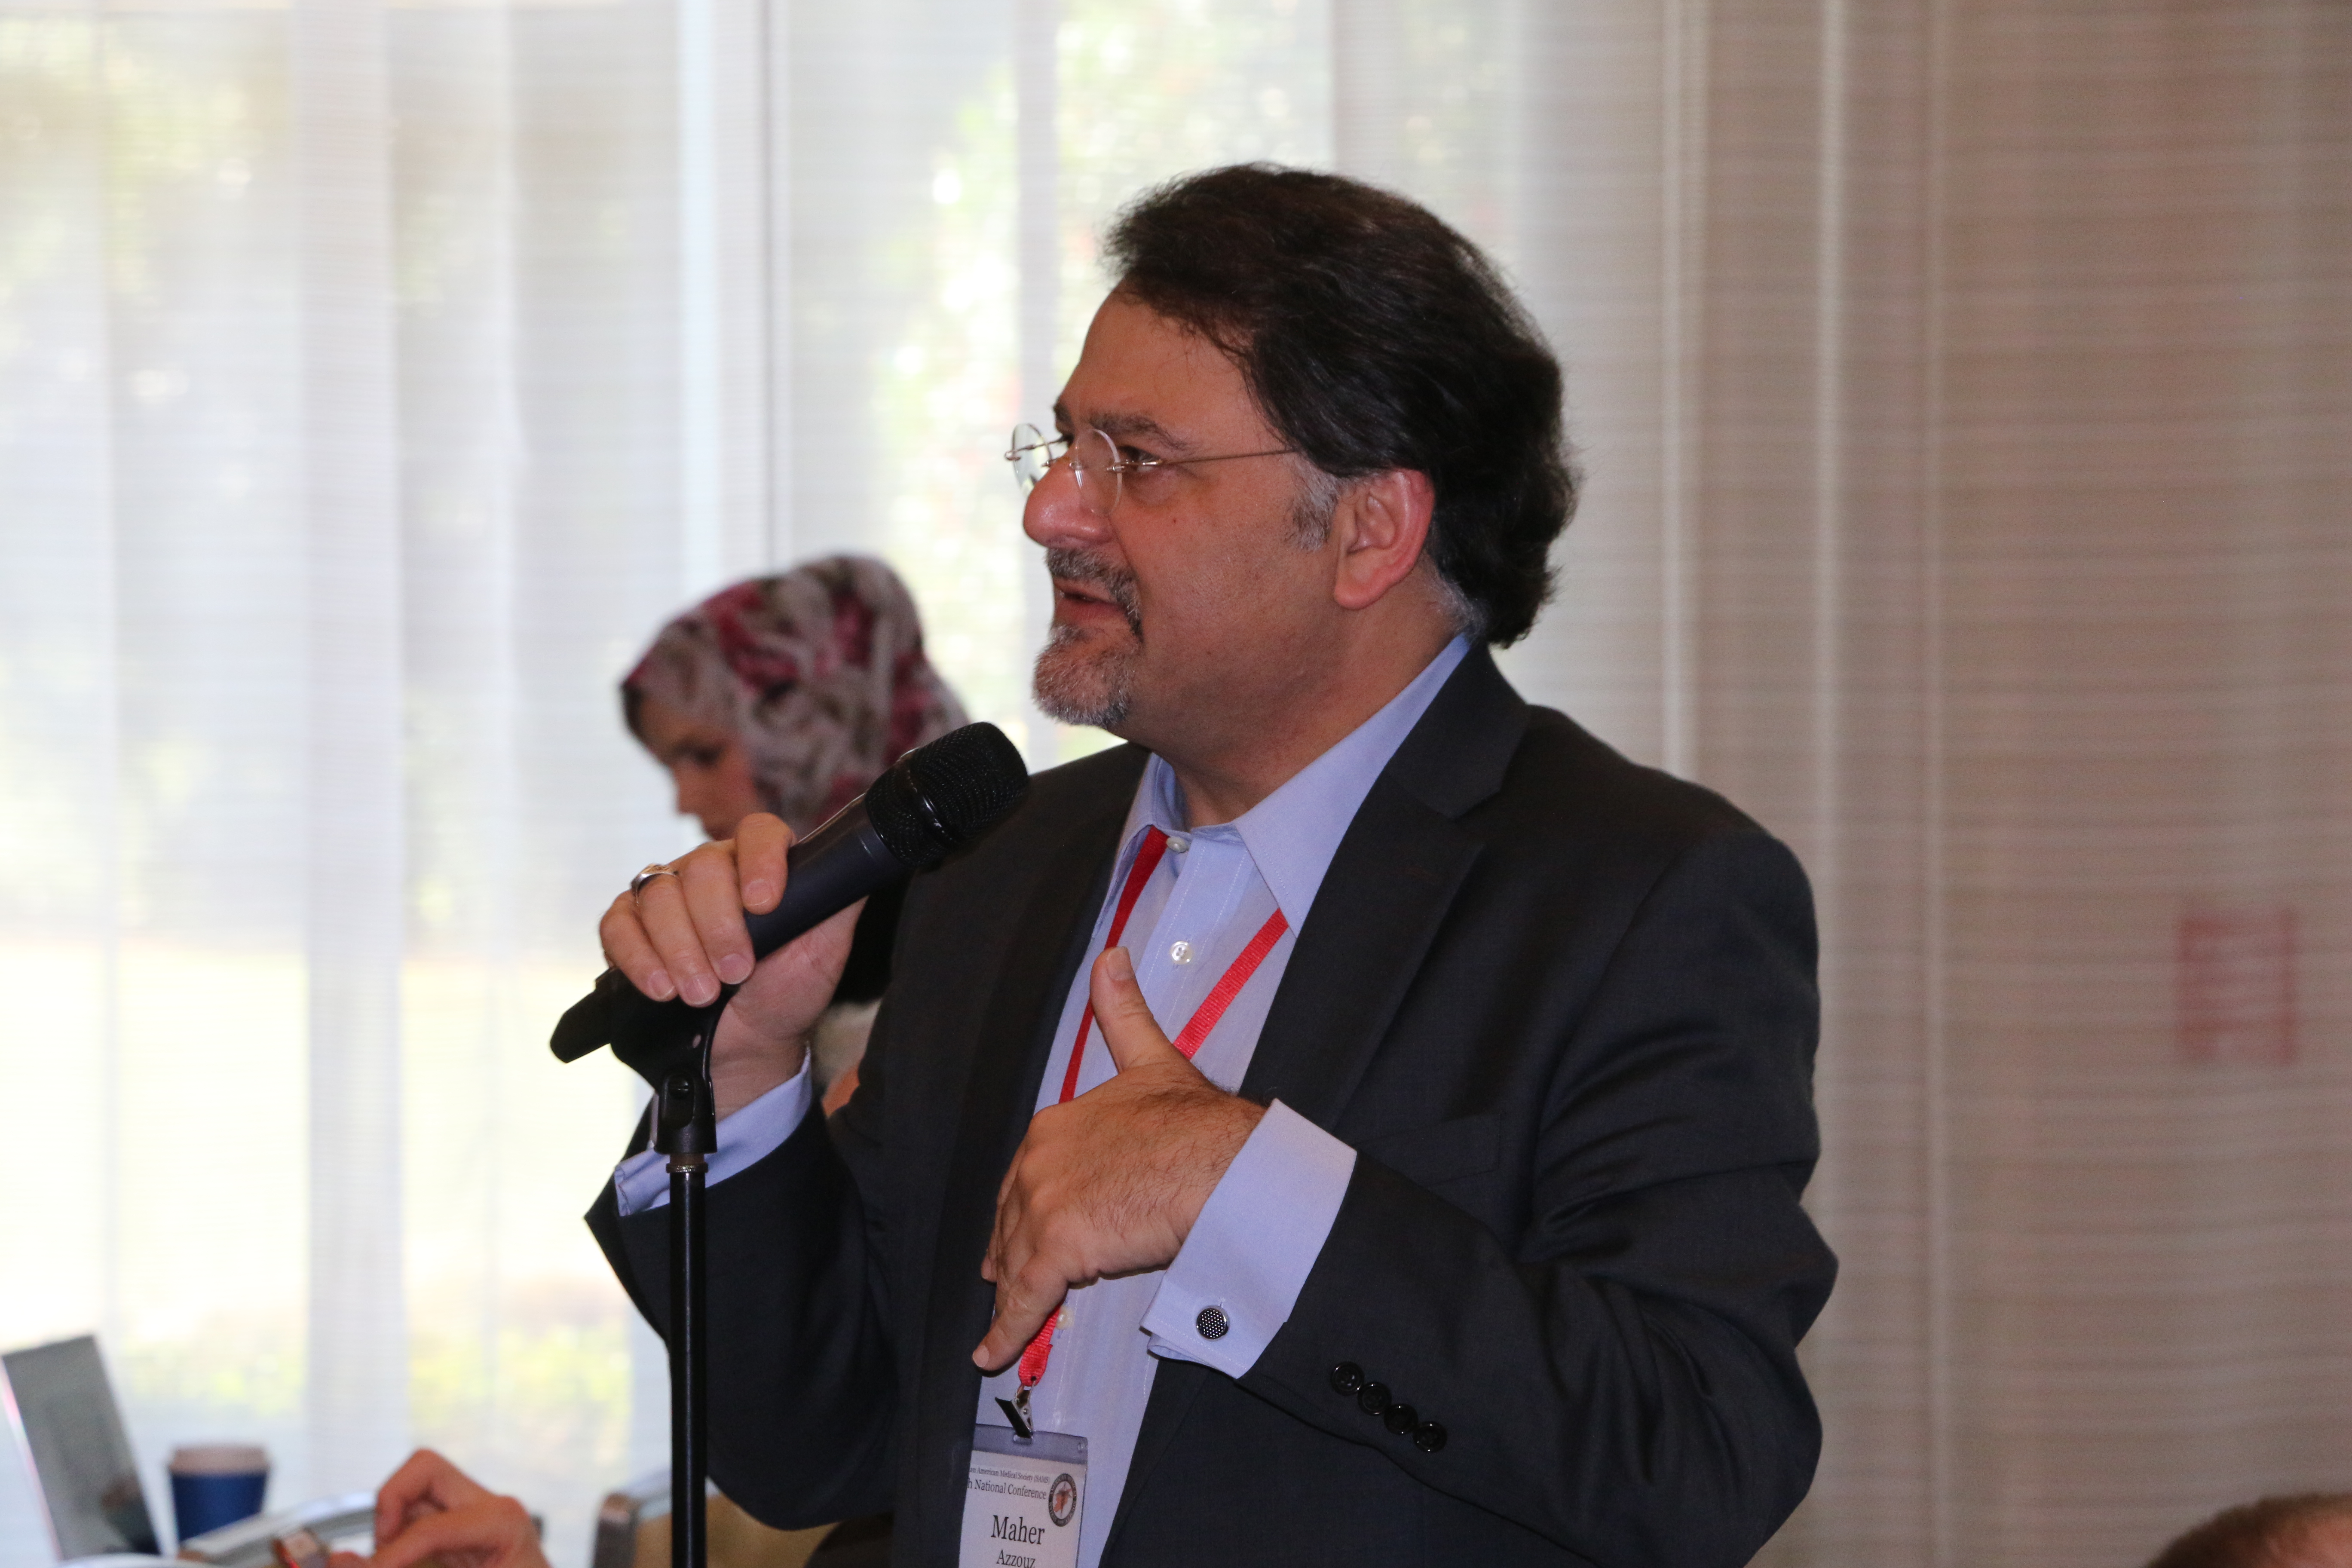 Dr. Maher Azzouz, SAMS Foundation Chair